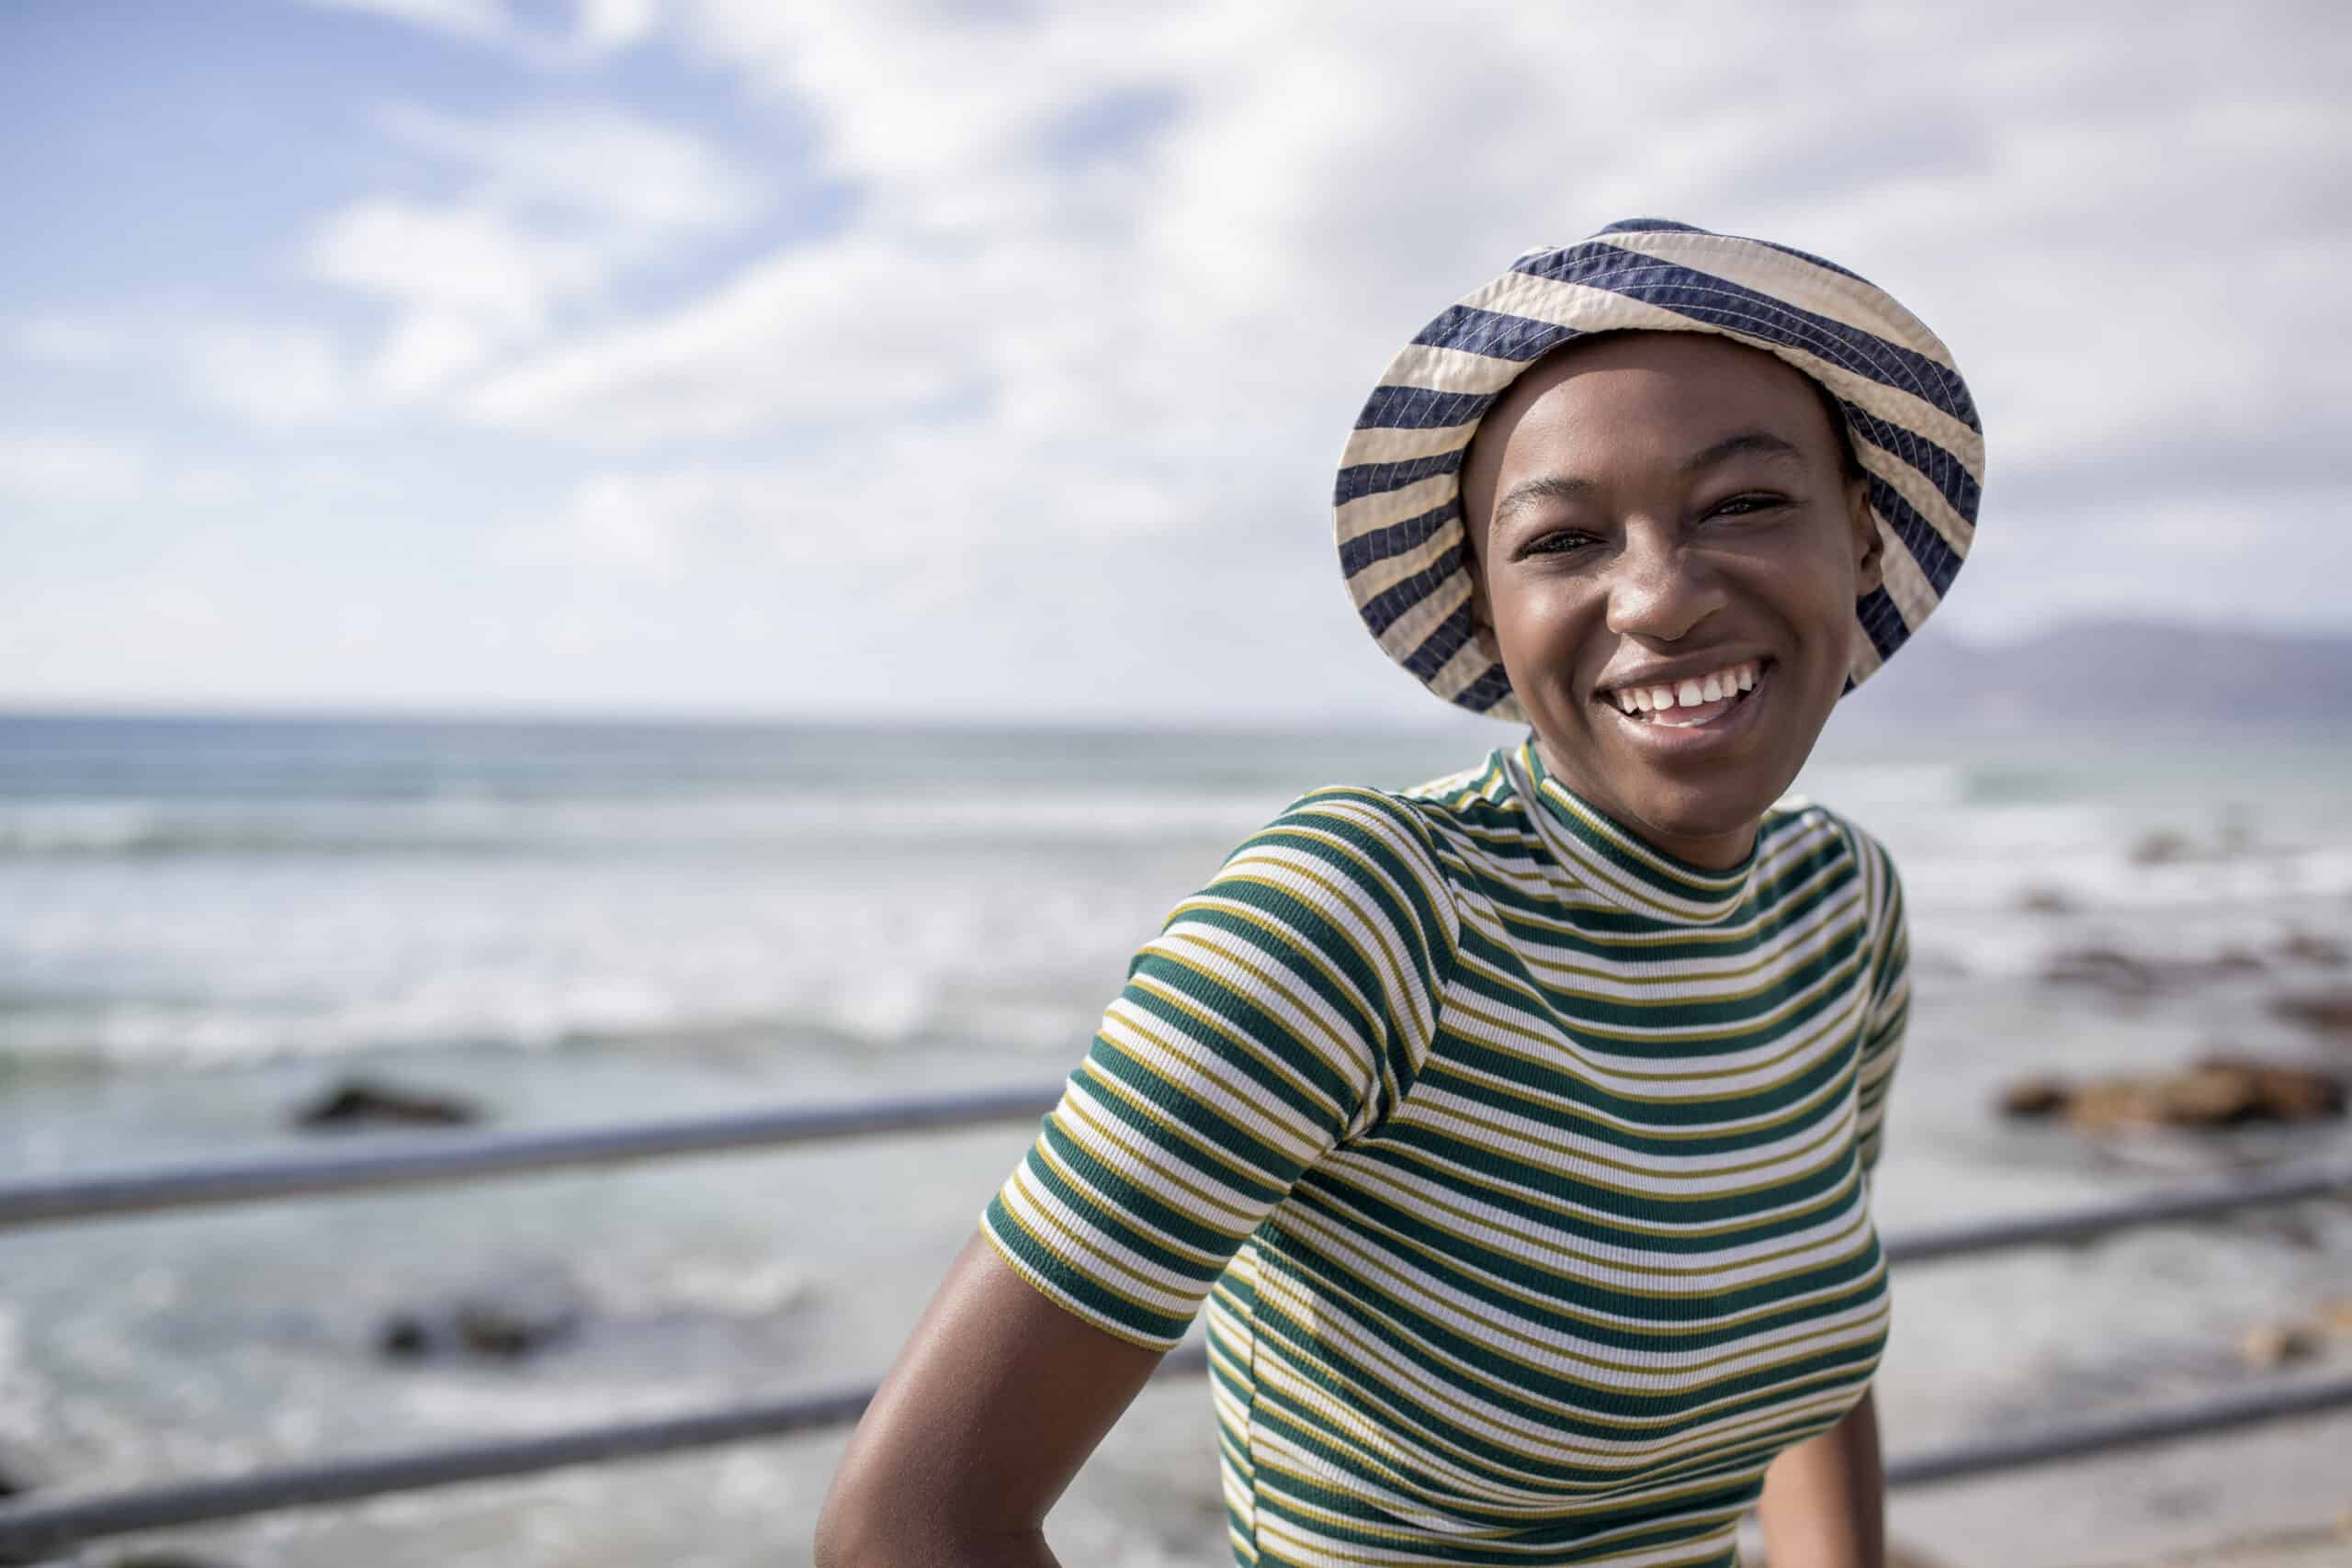 Eine fröhliche junge Frau mit gestreifter Mütze und grün gestreiftem Oberteil lächelt im Freien, mit dem Meer und einem klaren Himmel im Hintergrund. © Fotografie Tomas Rodriguez